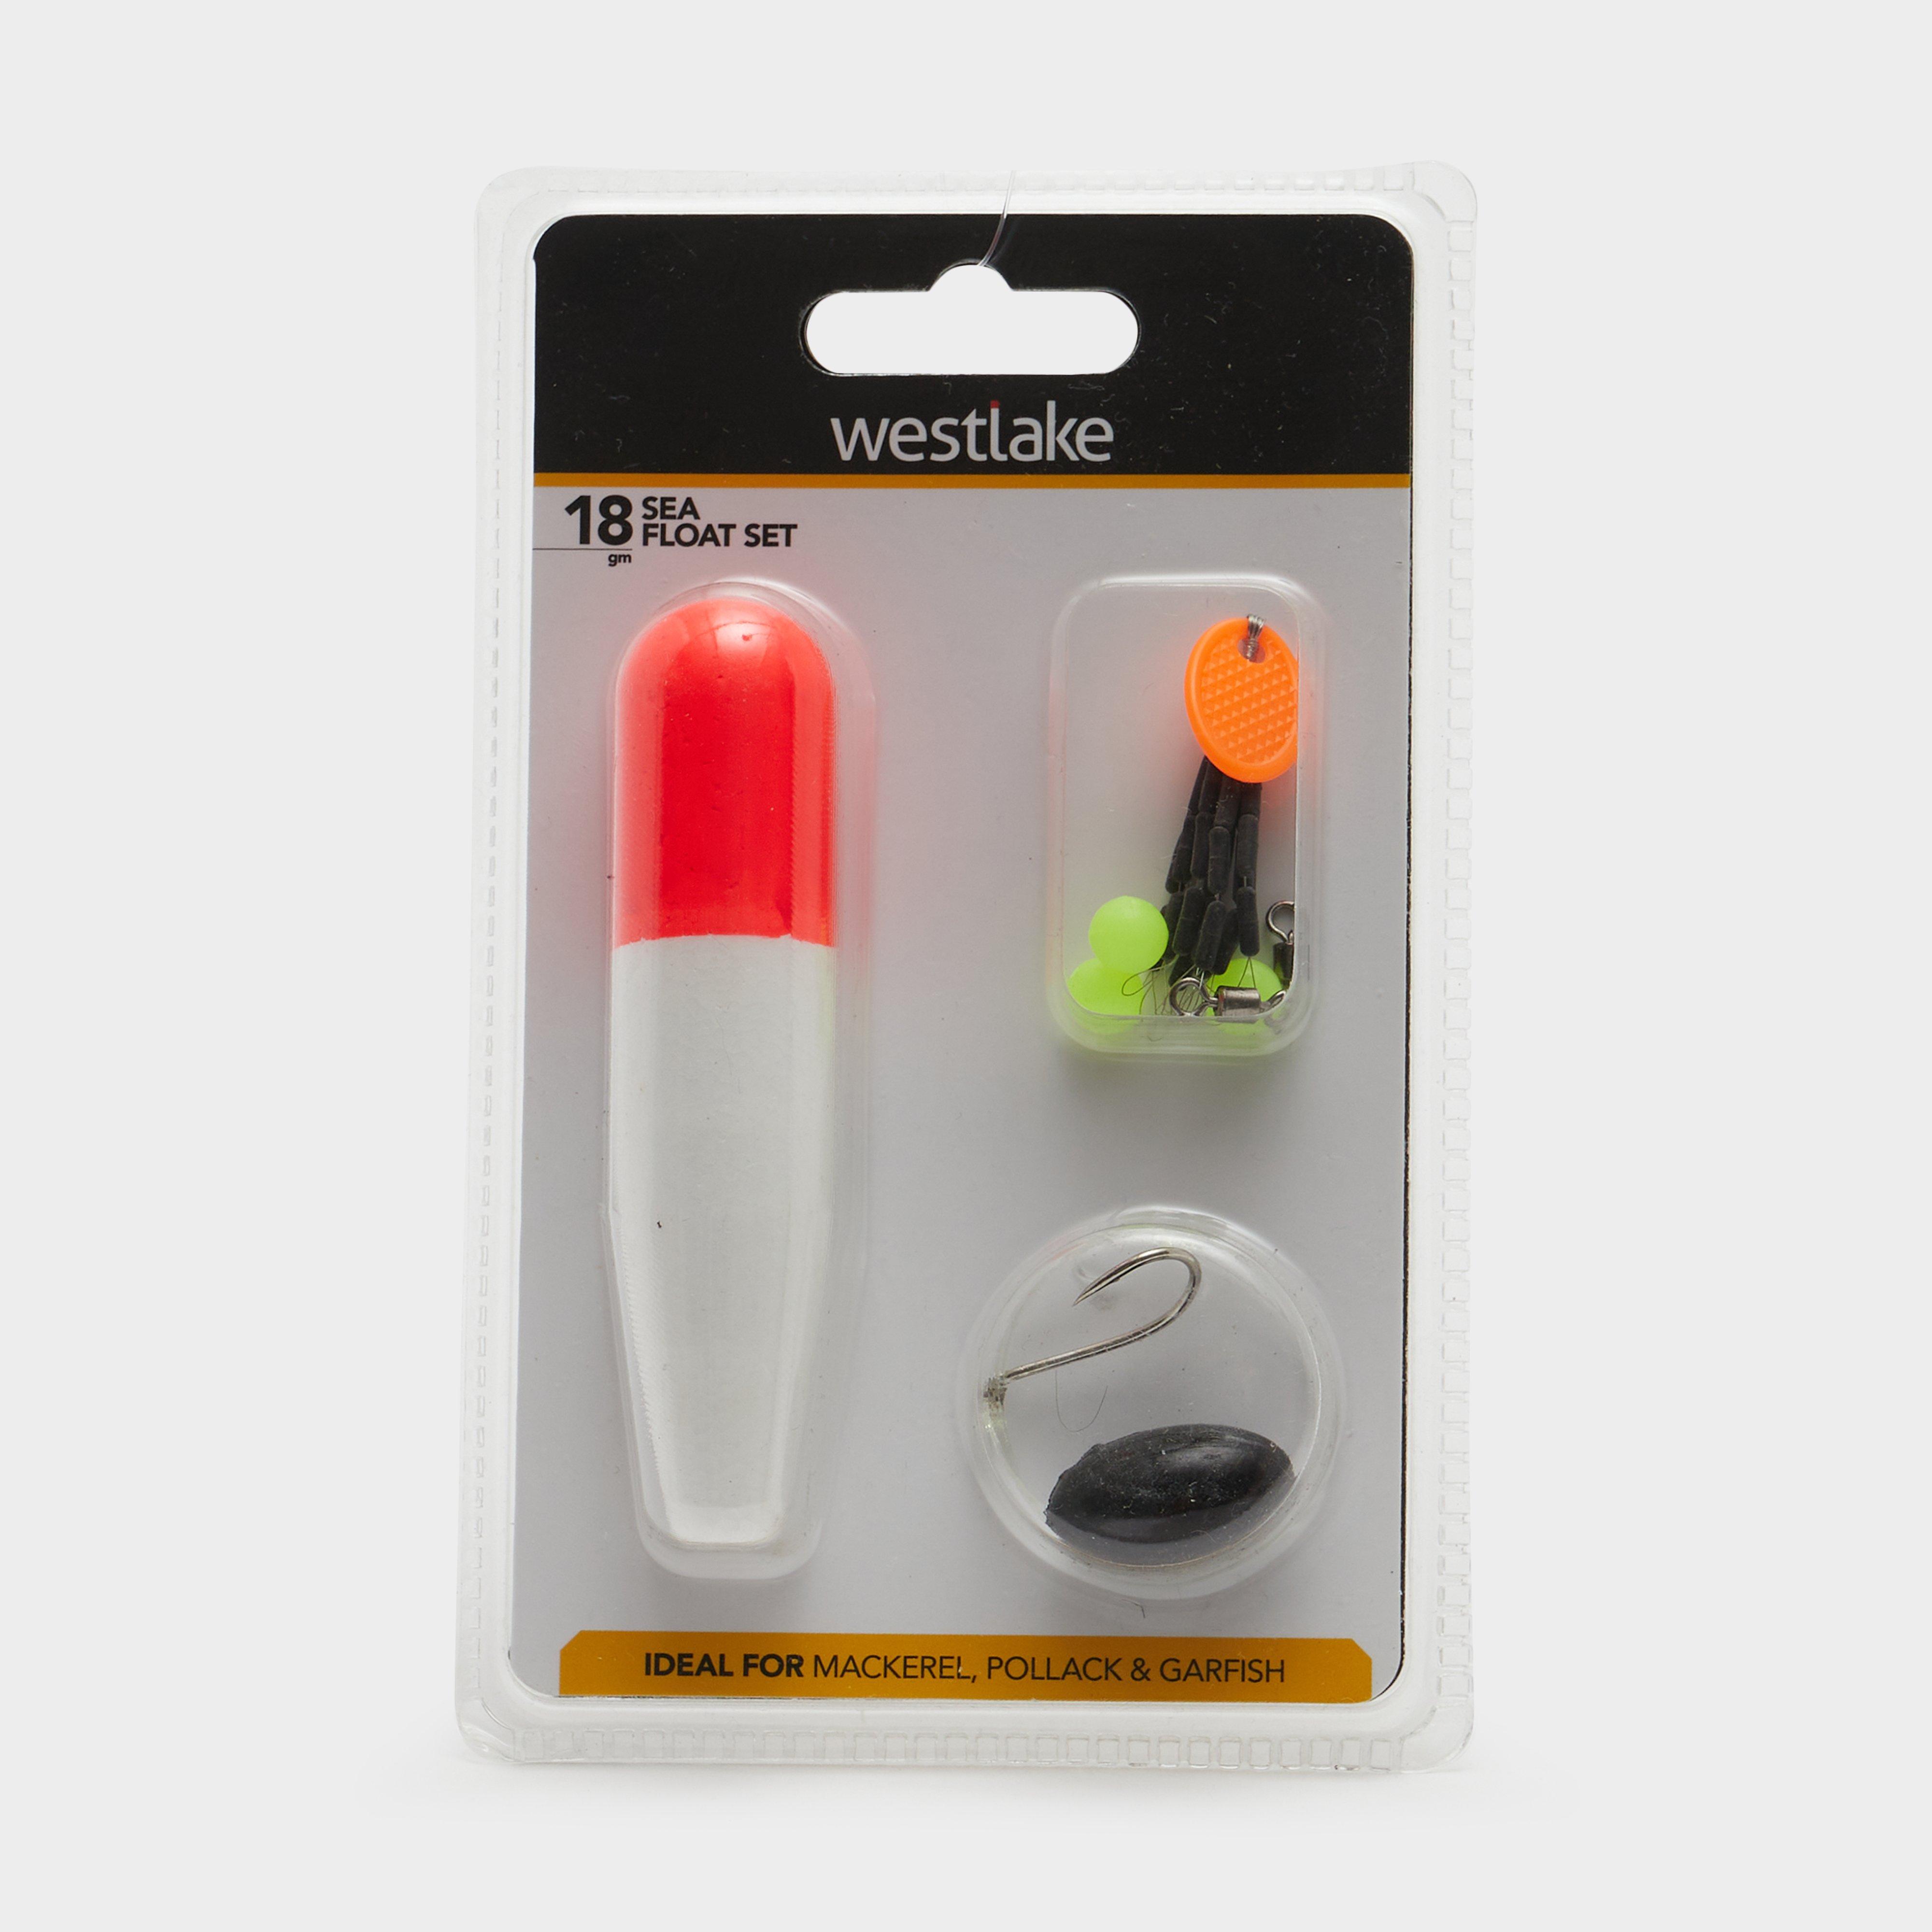 Westlake 18g Sea Float Kit - Orange/kit  Orange/kit